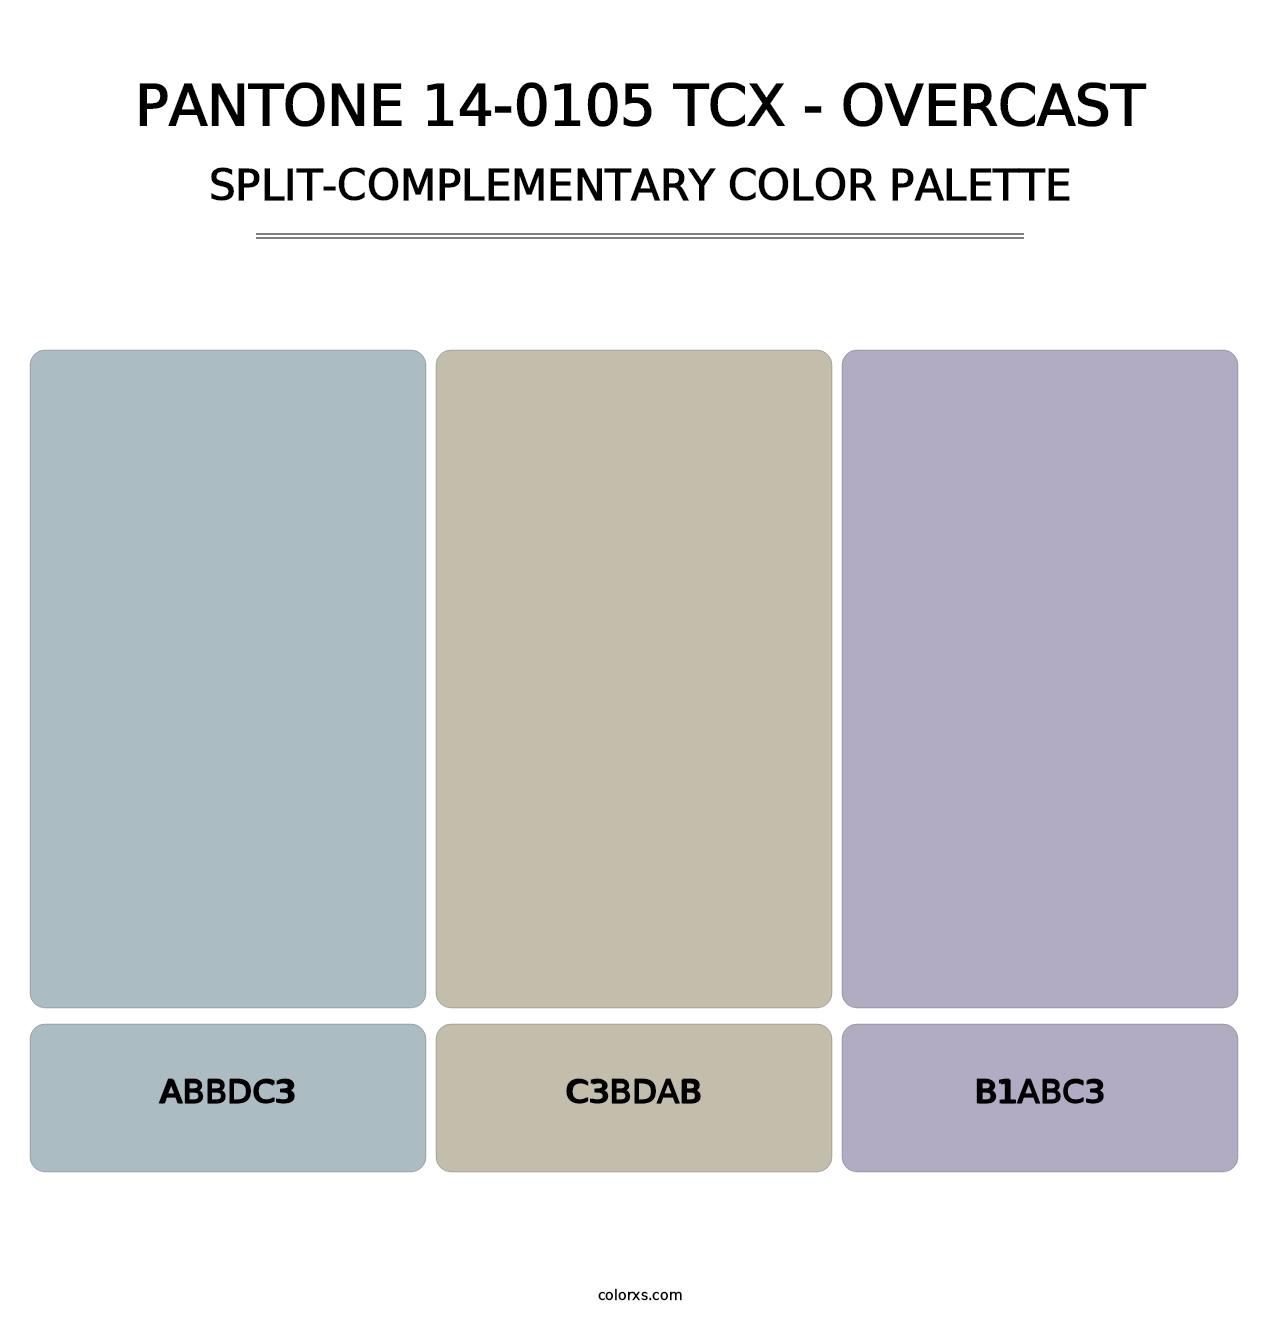 PANTONE 14-0105 TCX - Overcast - Split-Complementary Color Palette